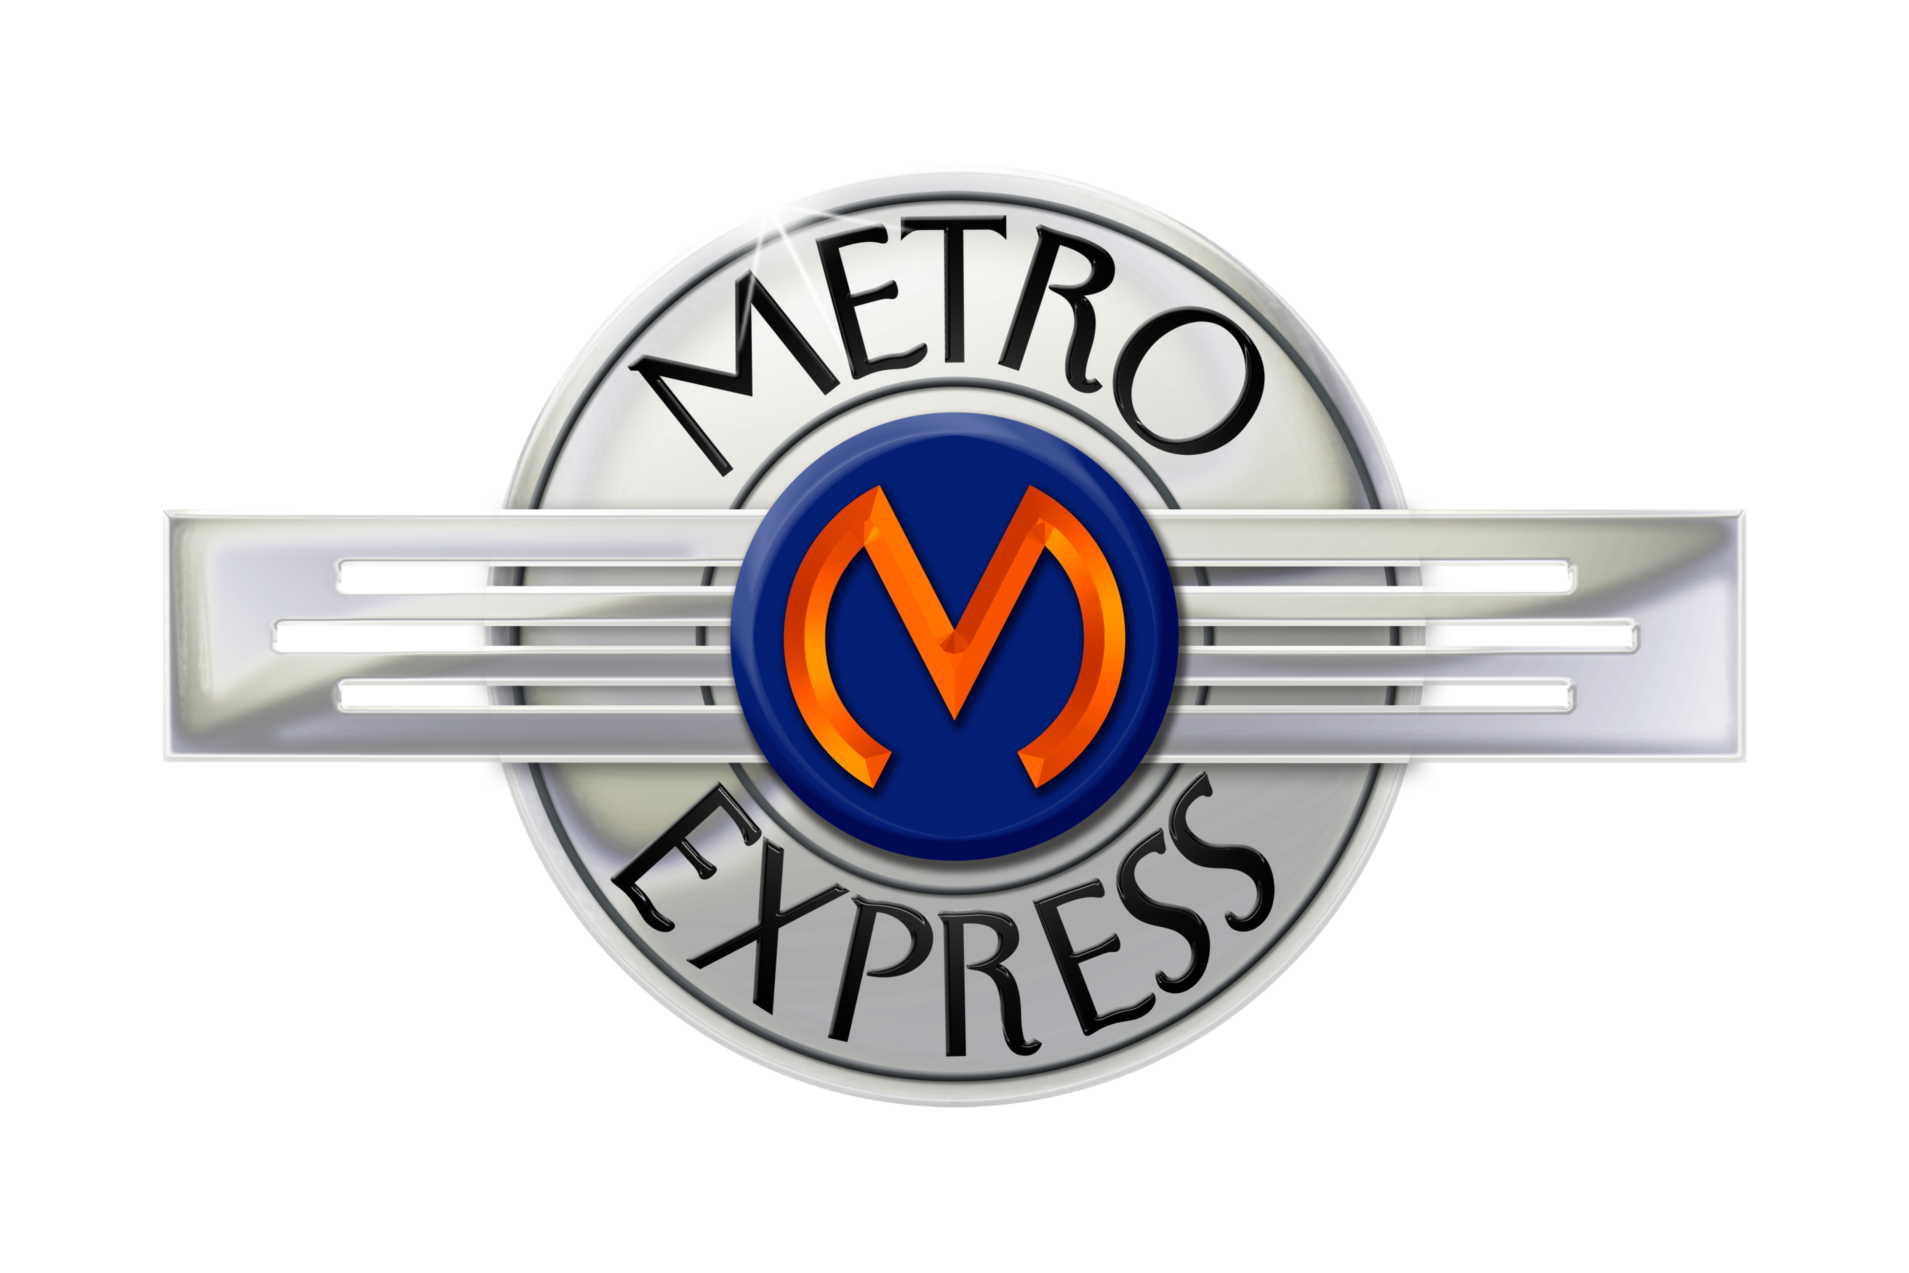 Metro Express Car Wash logo